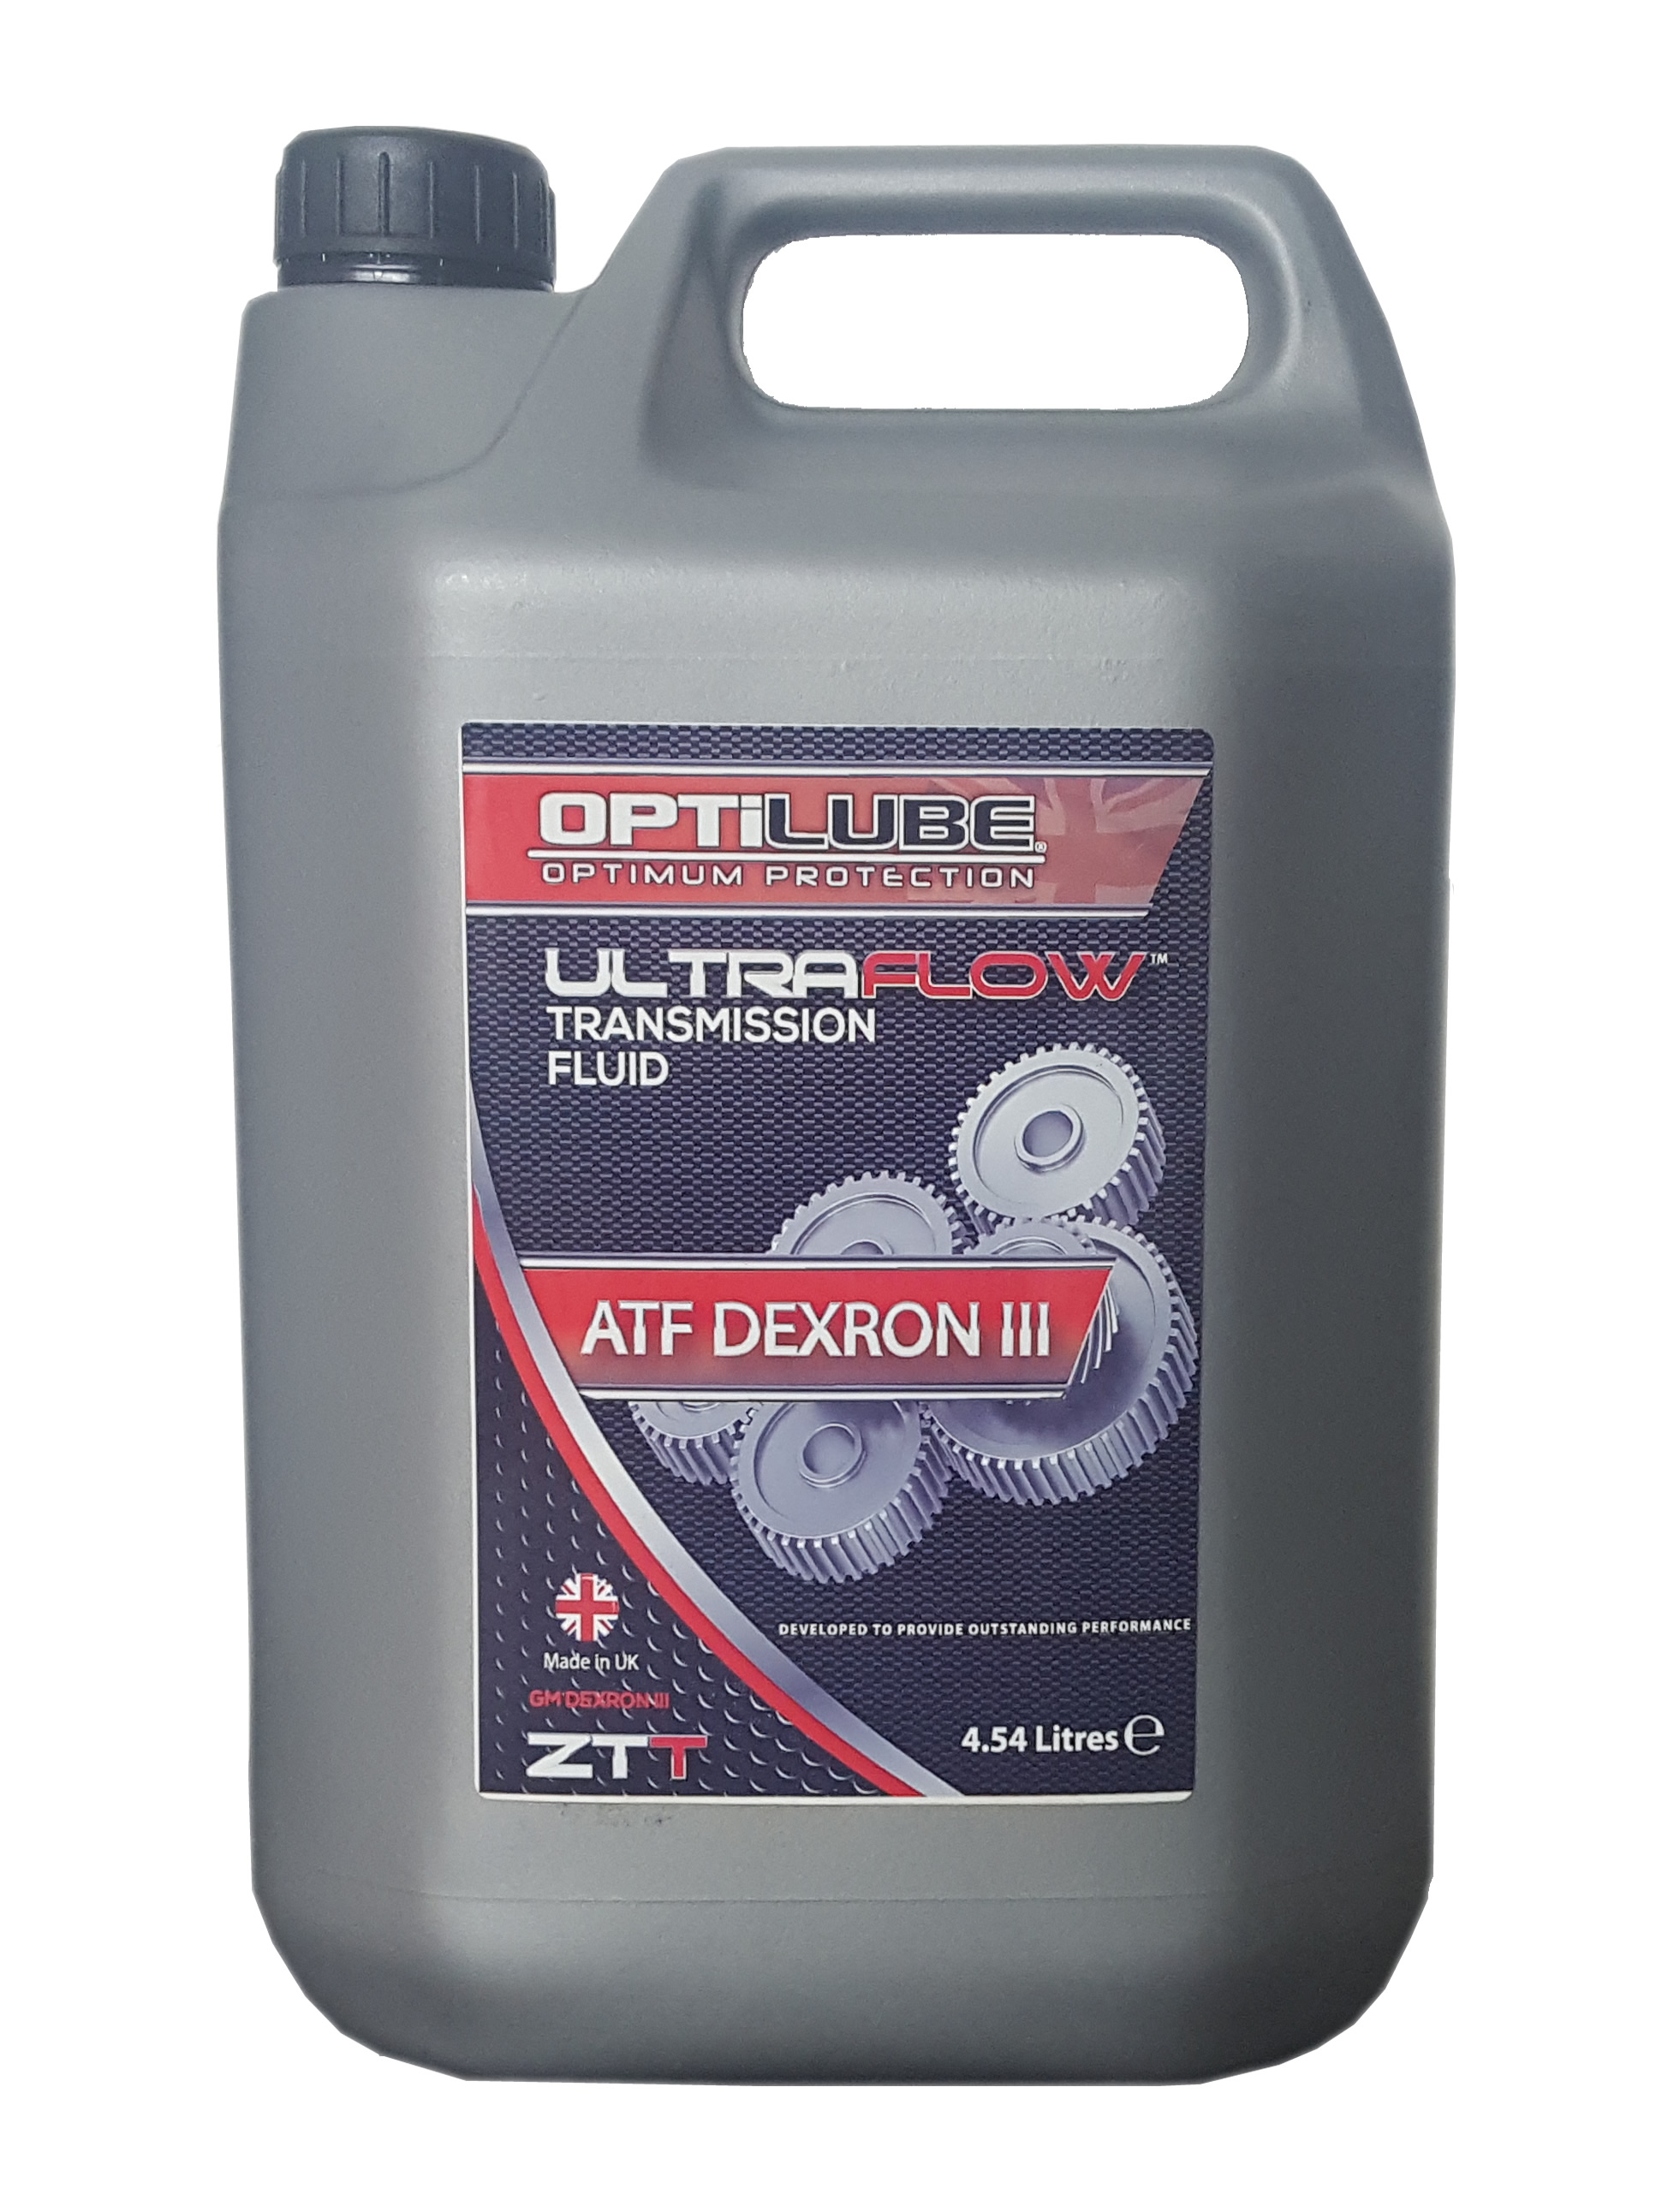 dexron iii atf fluid